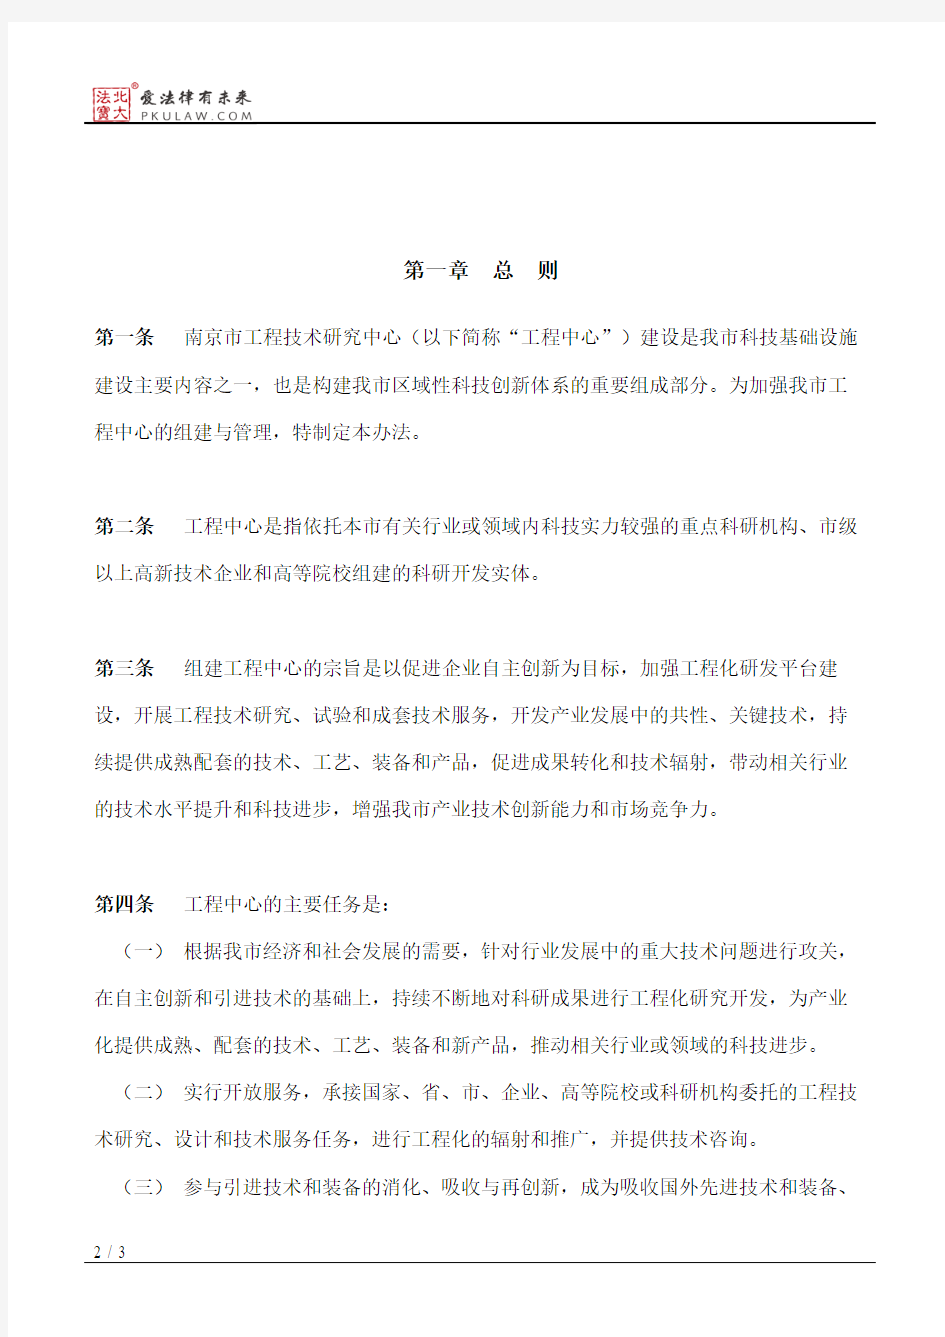 南京市科学技术局关于重新颁发《南京市工程技术研究中心管理办法